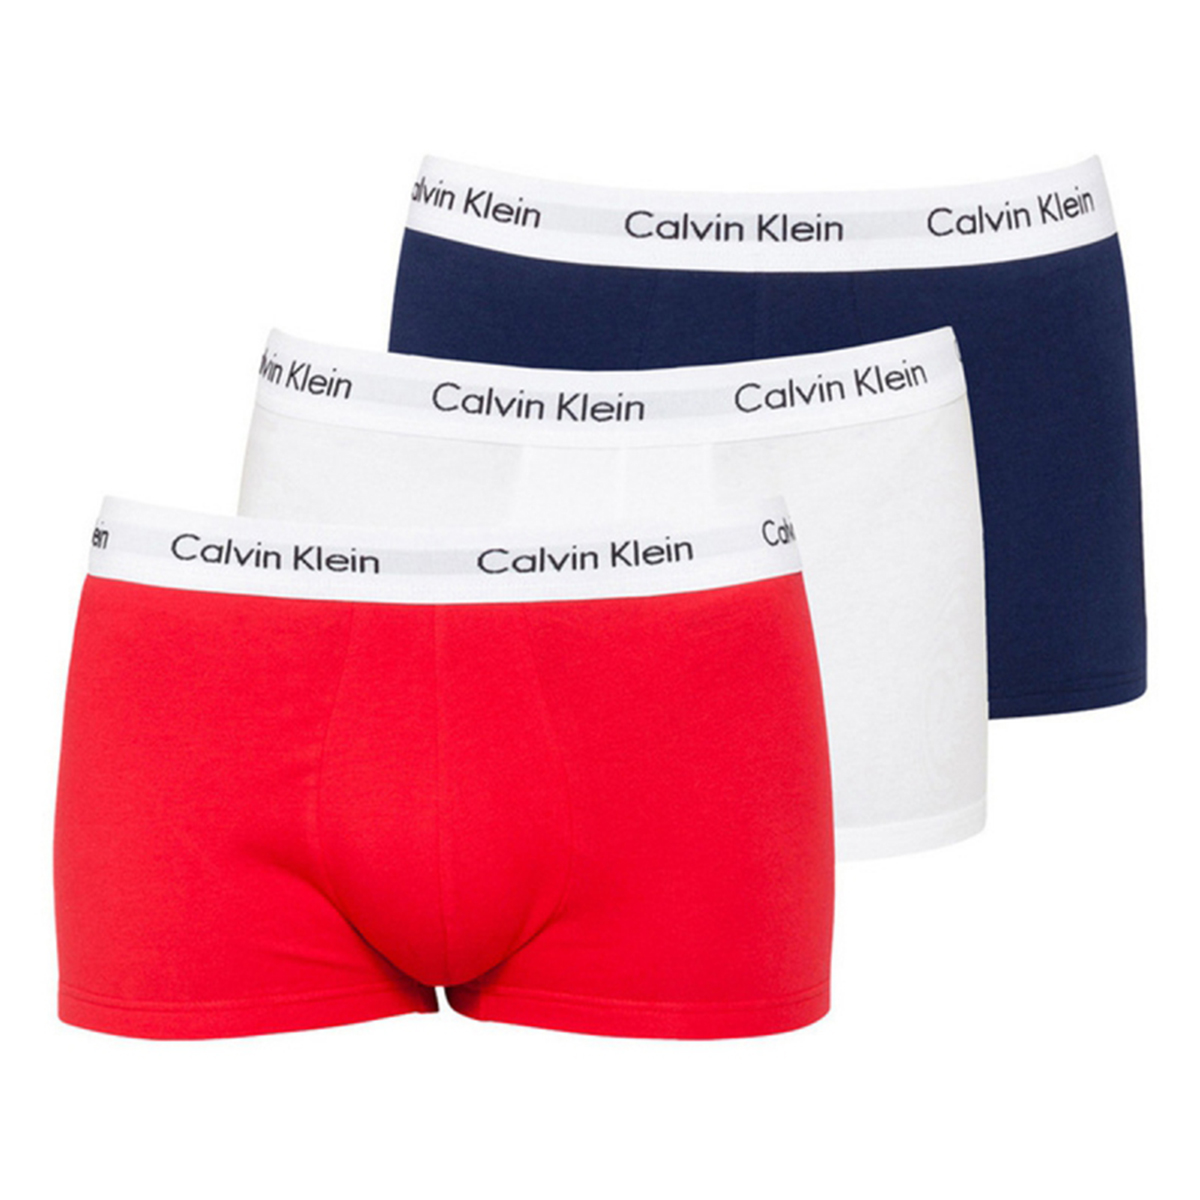 calvin-klein-boxerky-3pack-cervena-bila-modra